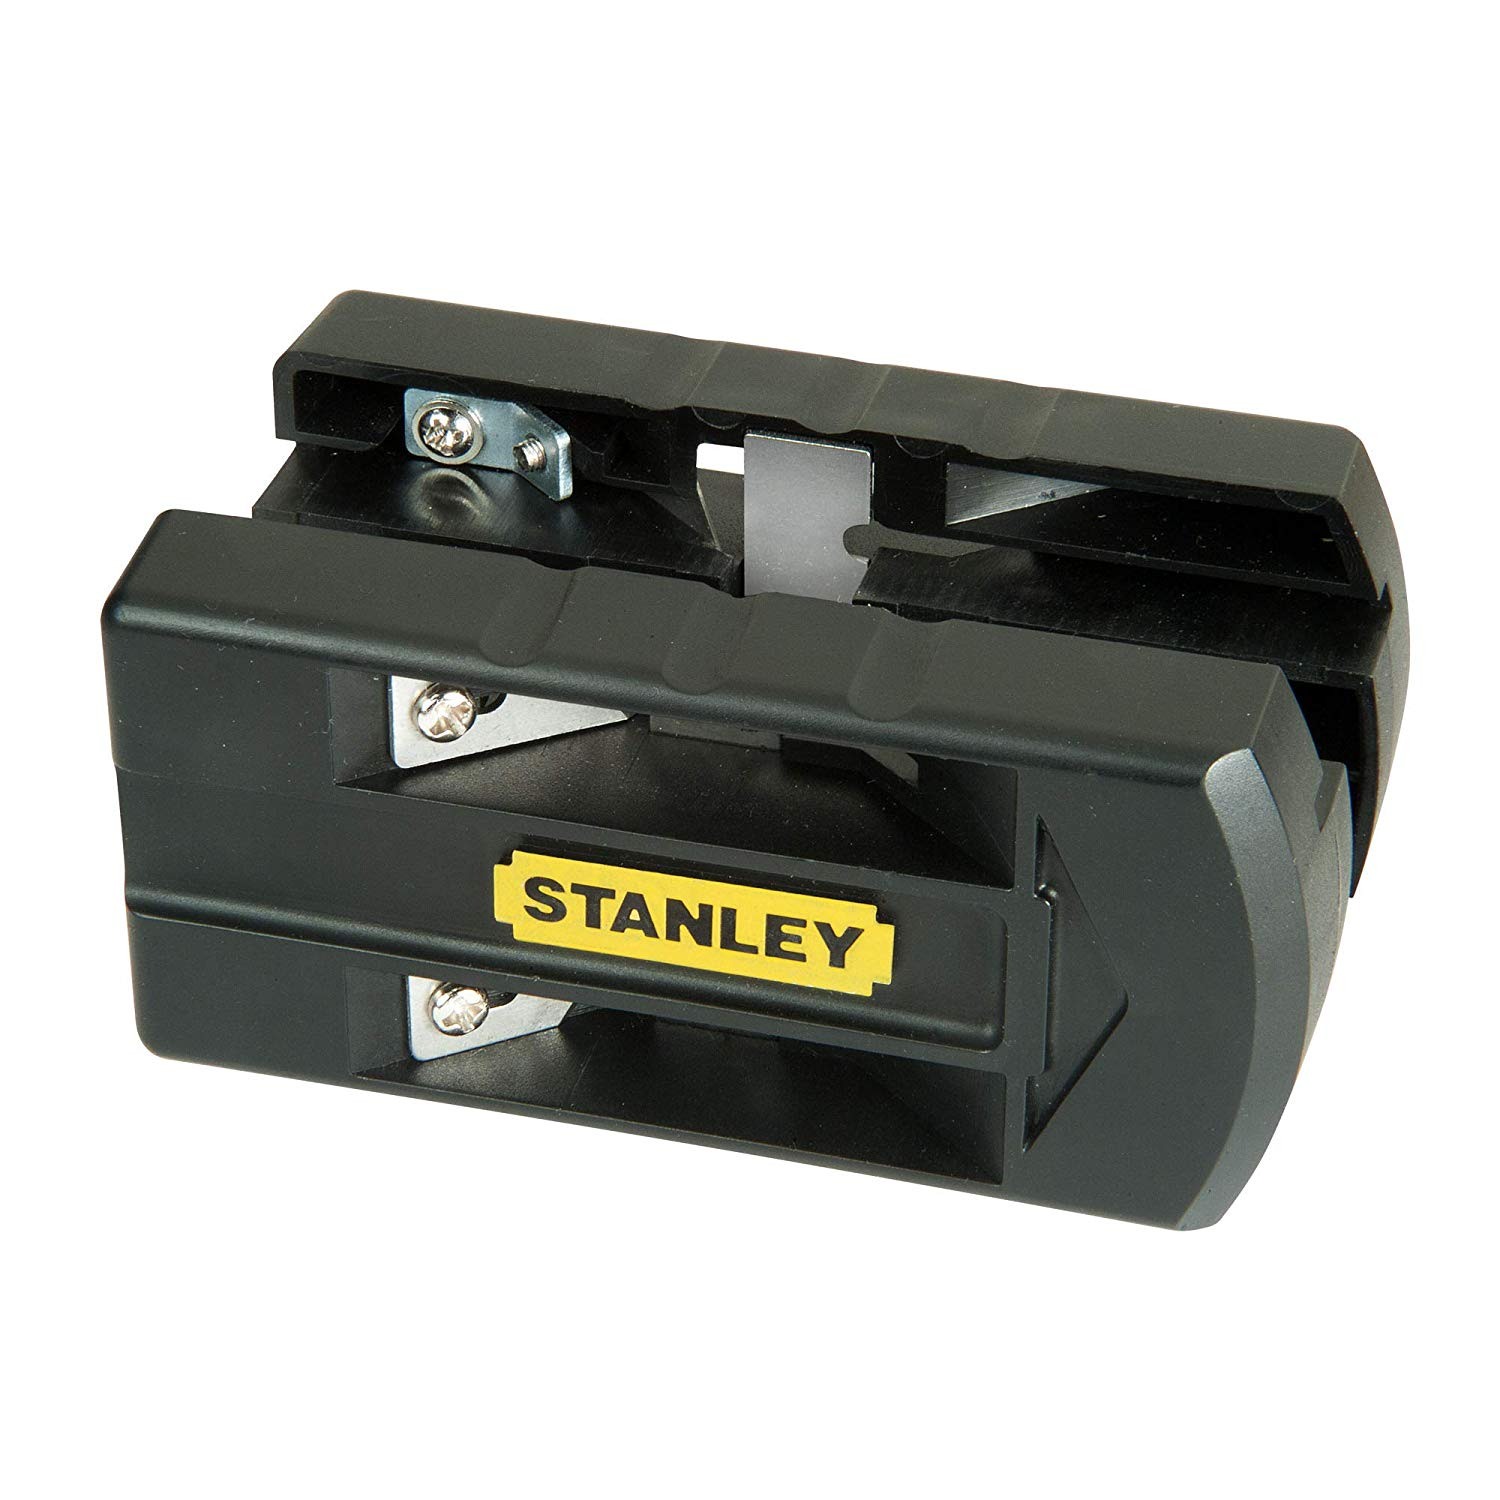 Dispozitiv pentru taiat canturile Stanley 12.7-25.4mm – STHT0-16139 yalco.ro